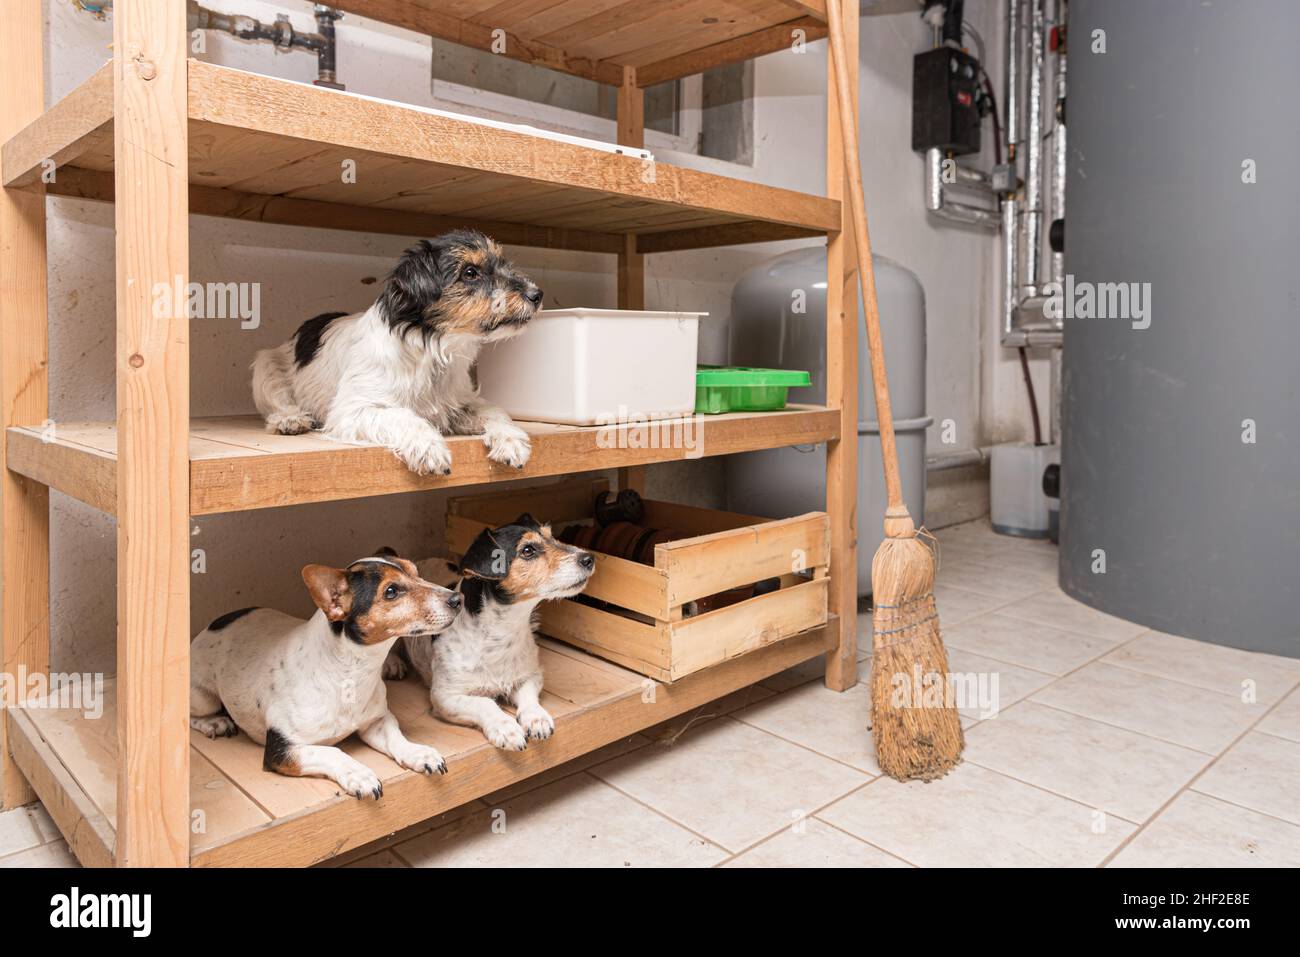 Carino piccolo purebred pazzo Jack Russell Terrier cani si trovano ben comportati in una mensola Foto Stock